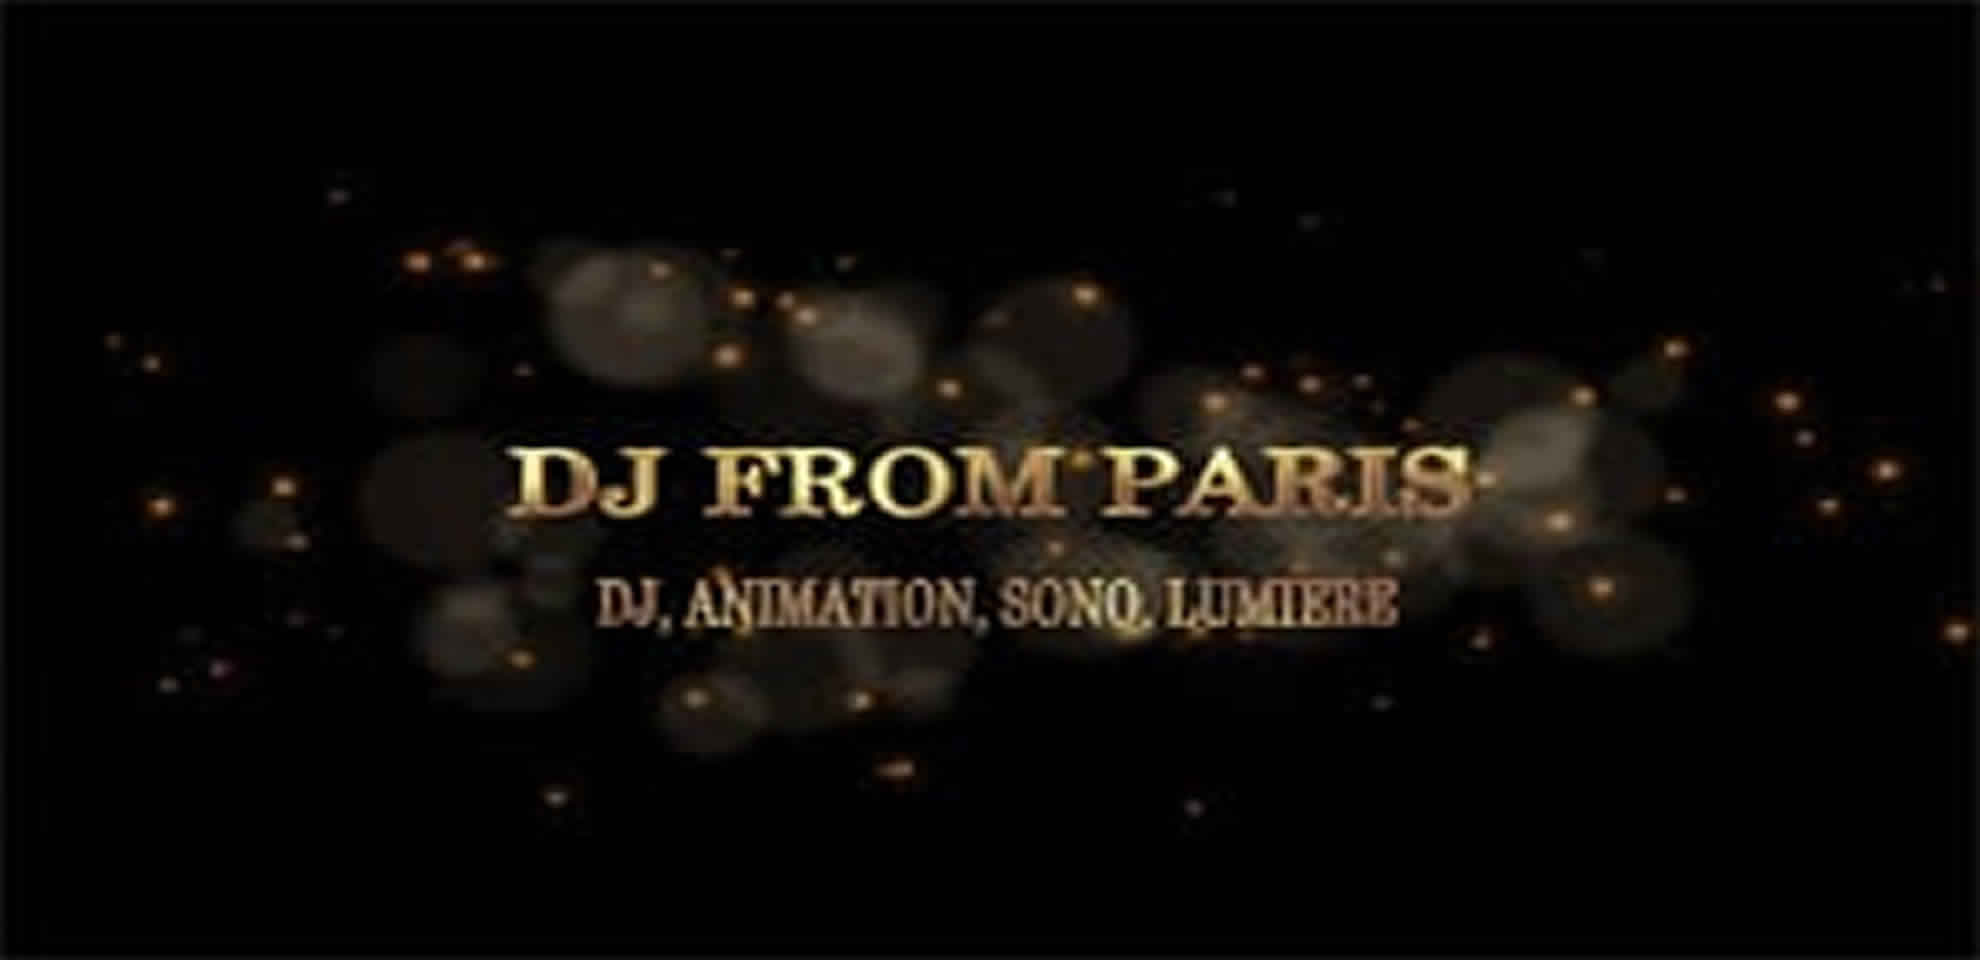 DJ FROM PARIS